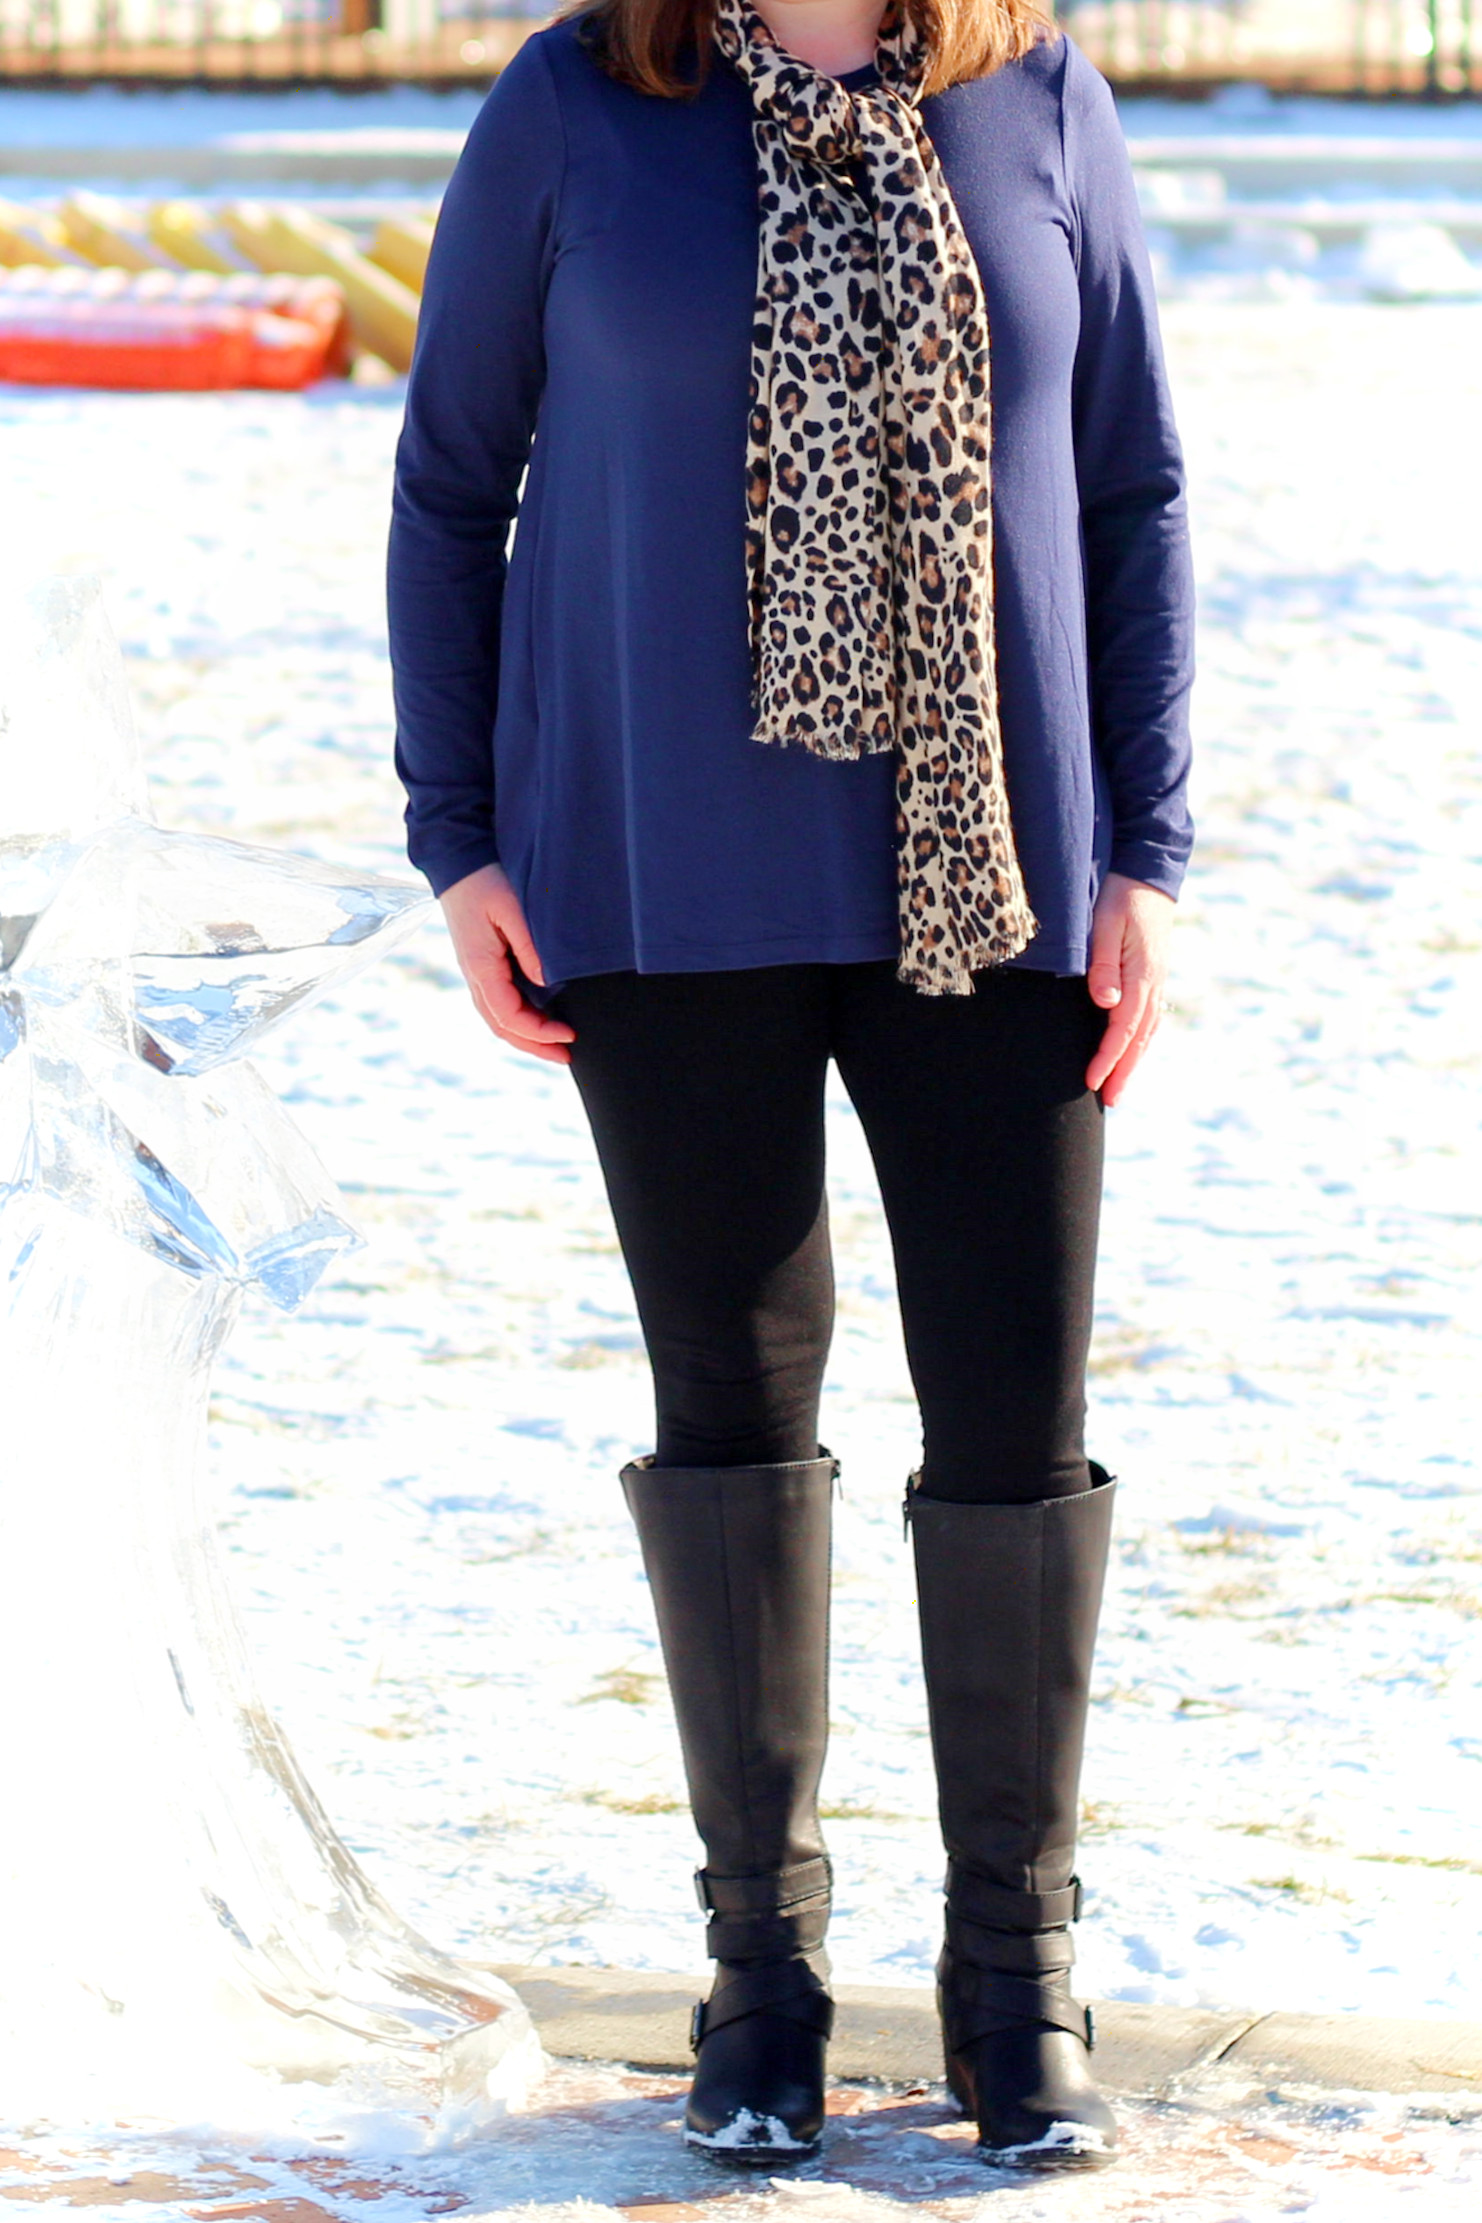 #winter outfits #leggings #tunic #women'sfashion